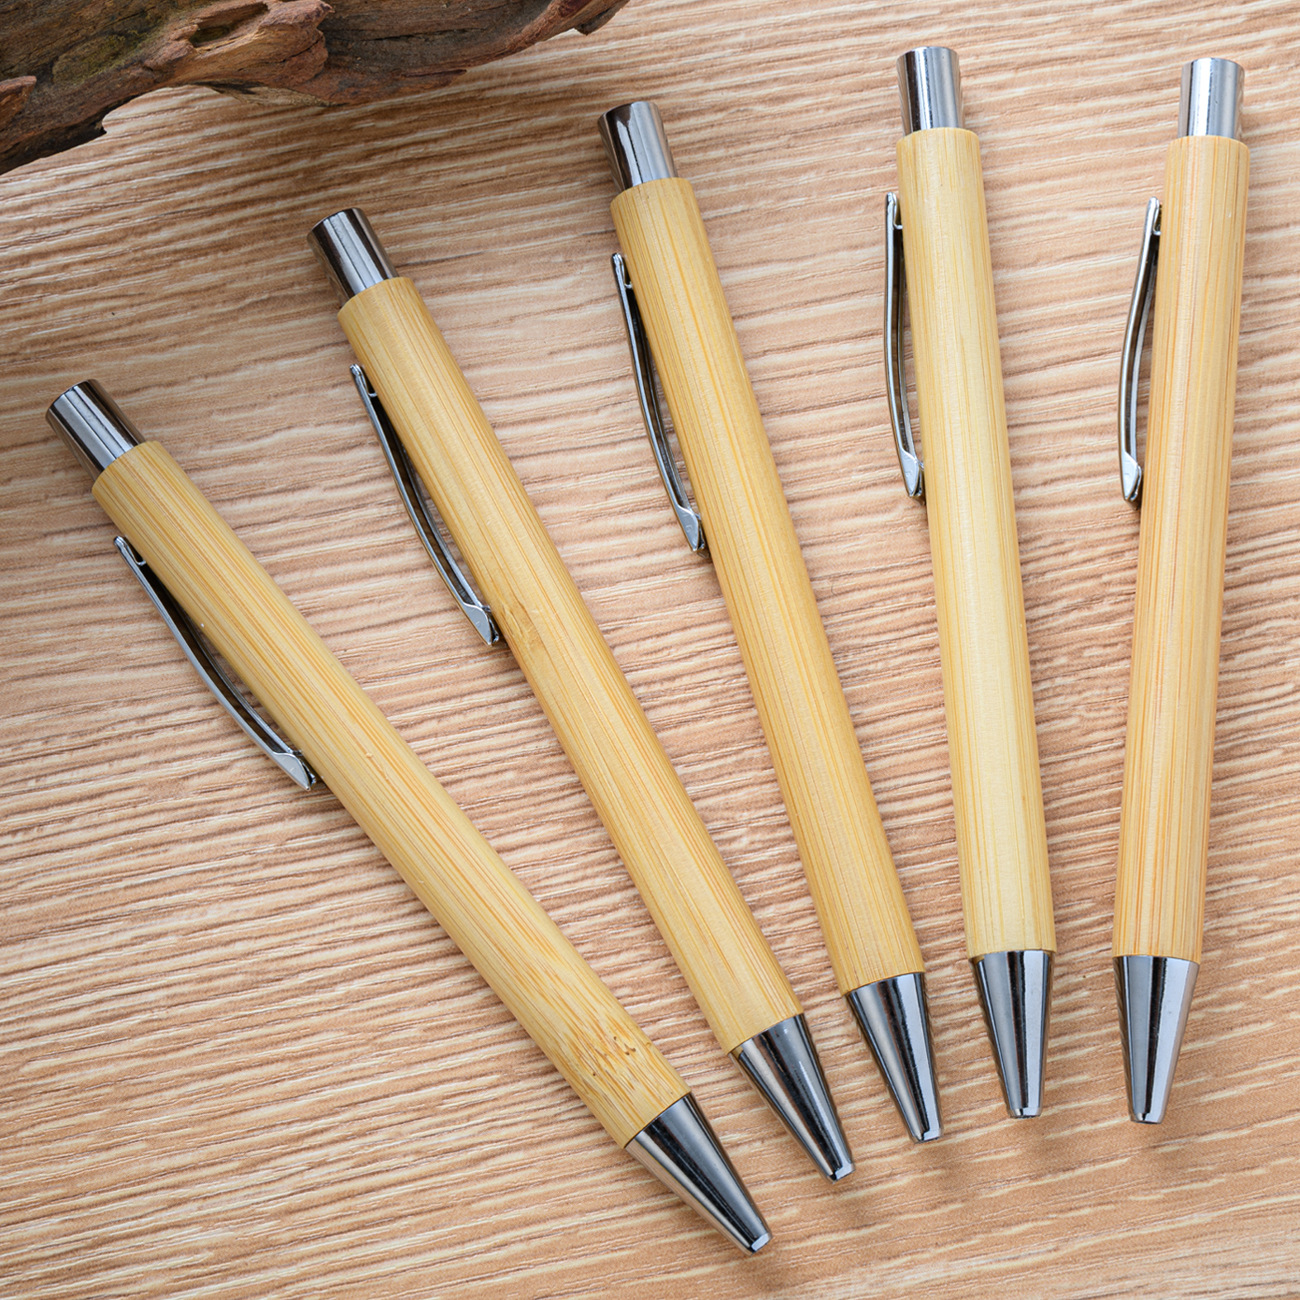 Новый Двигаться бамбук Ручка оптовая торговля творческий канцтовары бамбук Двигаться шариковая ручка Может печать logo бамбук шариковая ручка